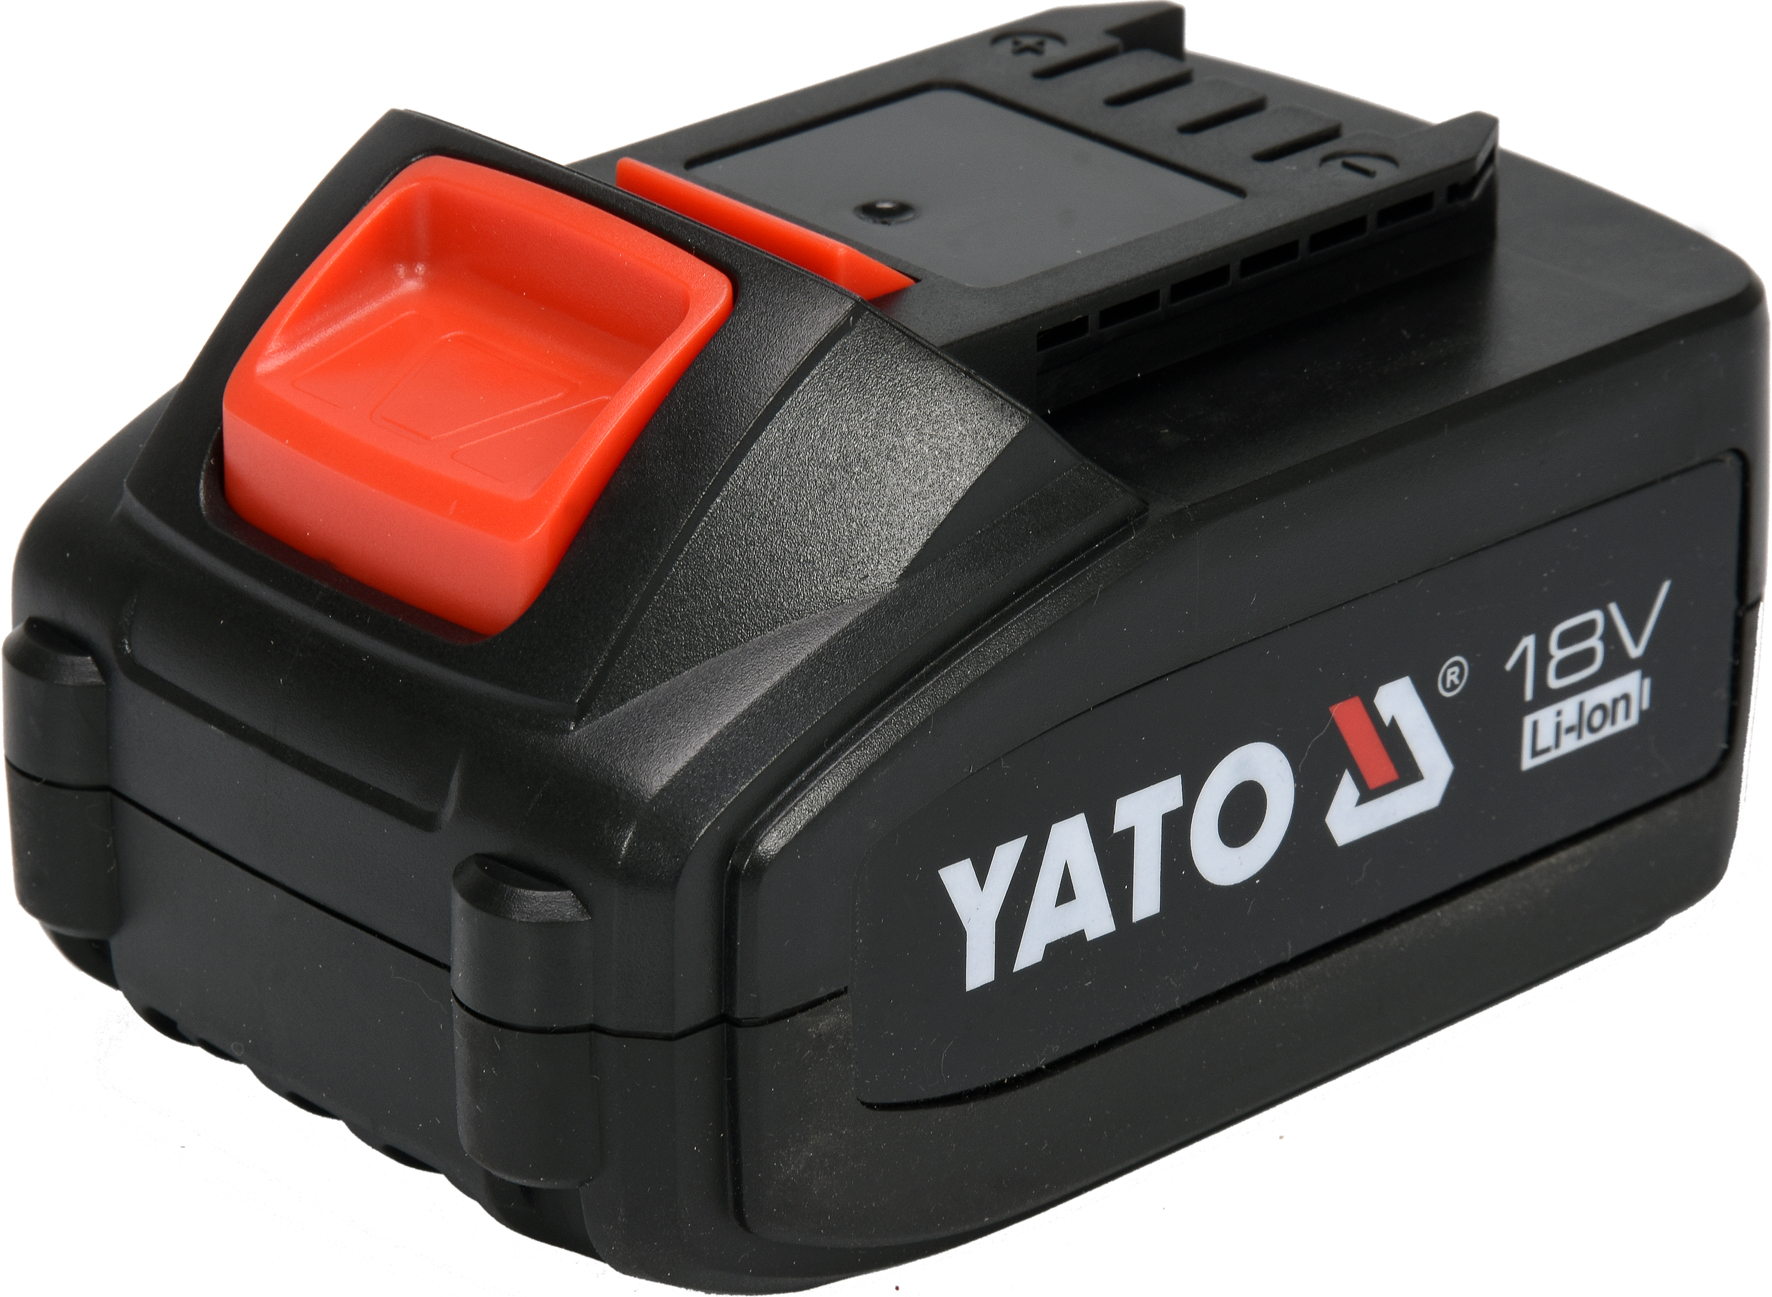 Baterie náhradní 18V Li-Ion 4,0 AH (YT-82782, YT-82788,YT-82826) Yato YT-82844 + Dárek, servis bez starostí v hodnotě 300Kč